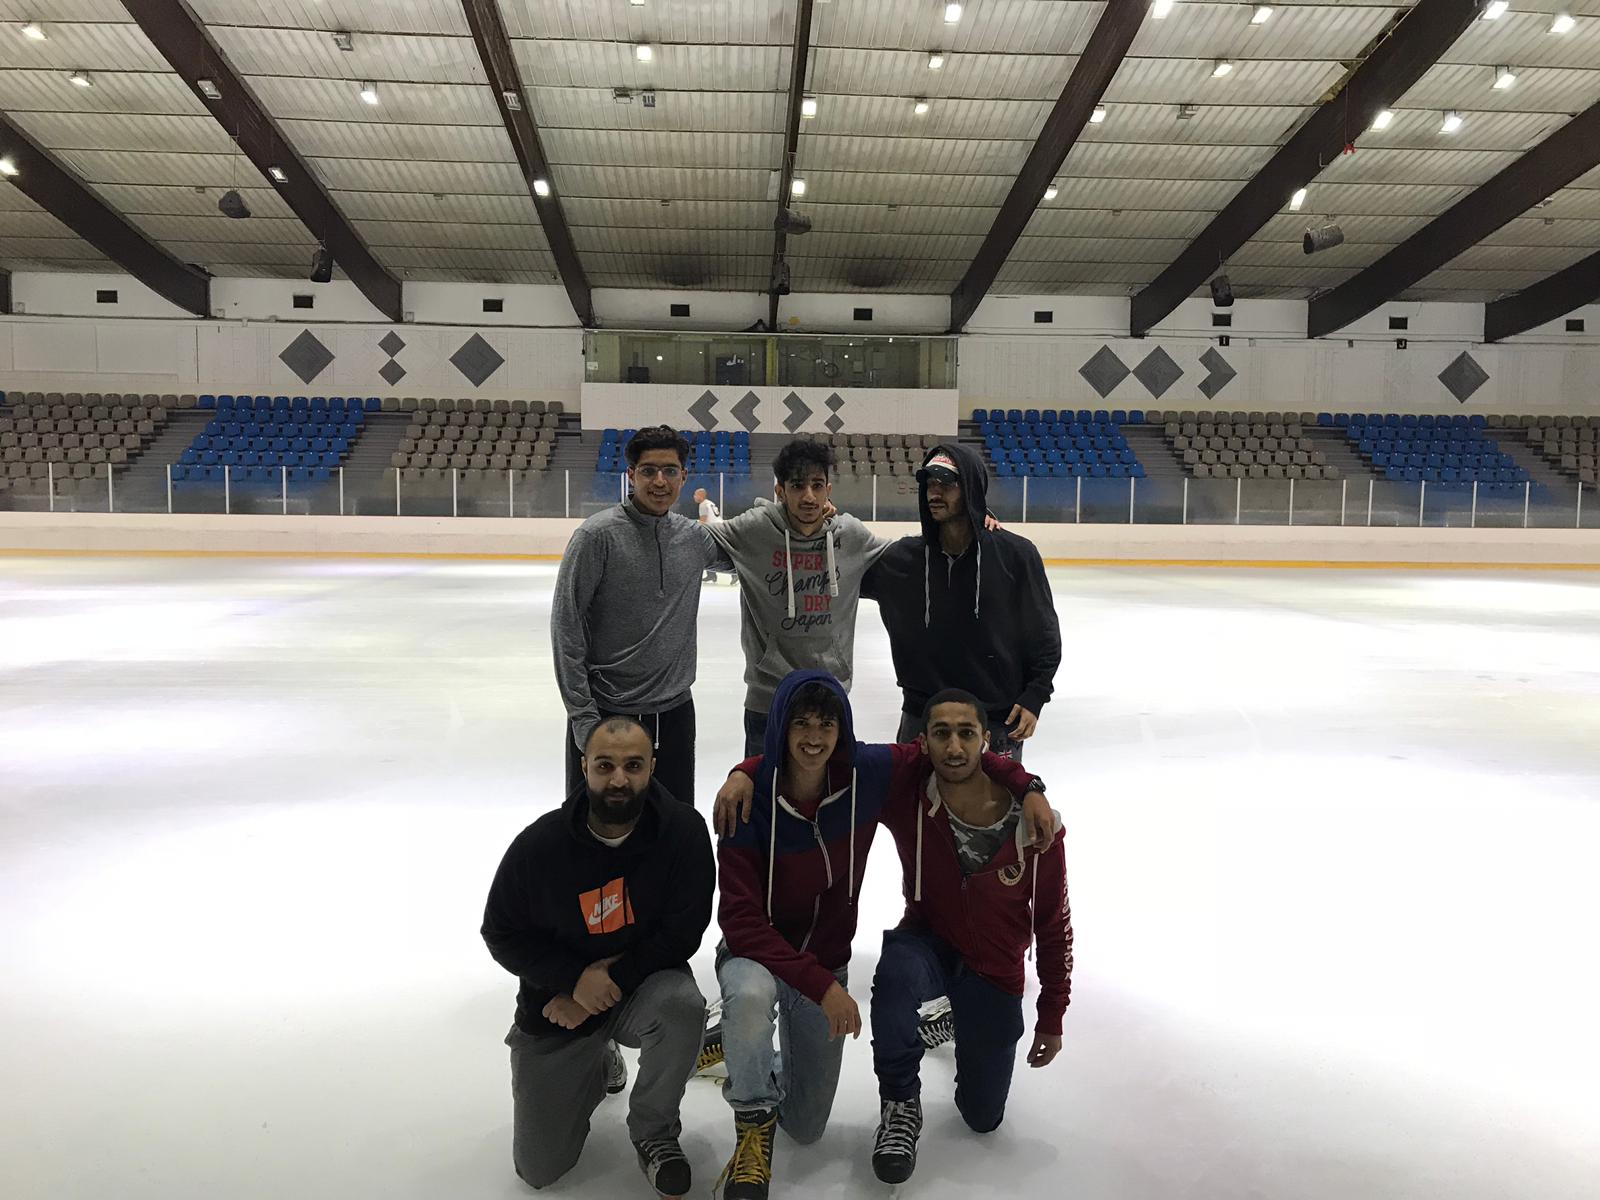 Member of the Kuwaiti speed skating team